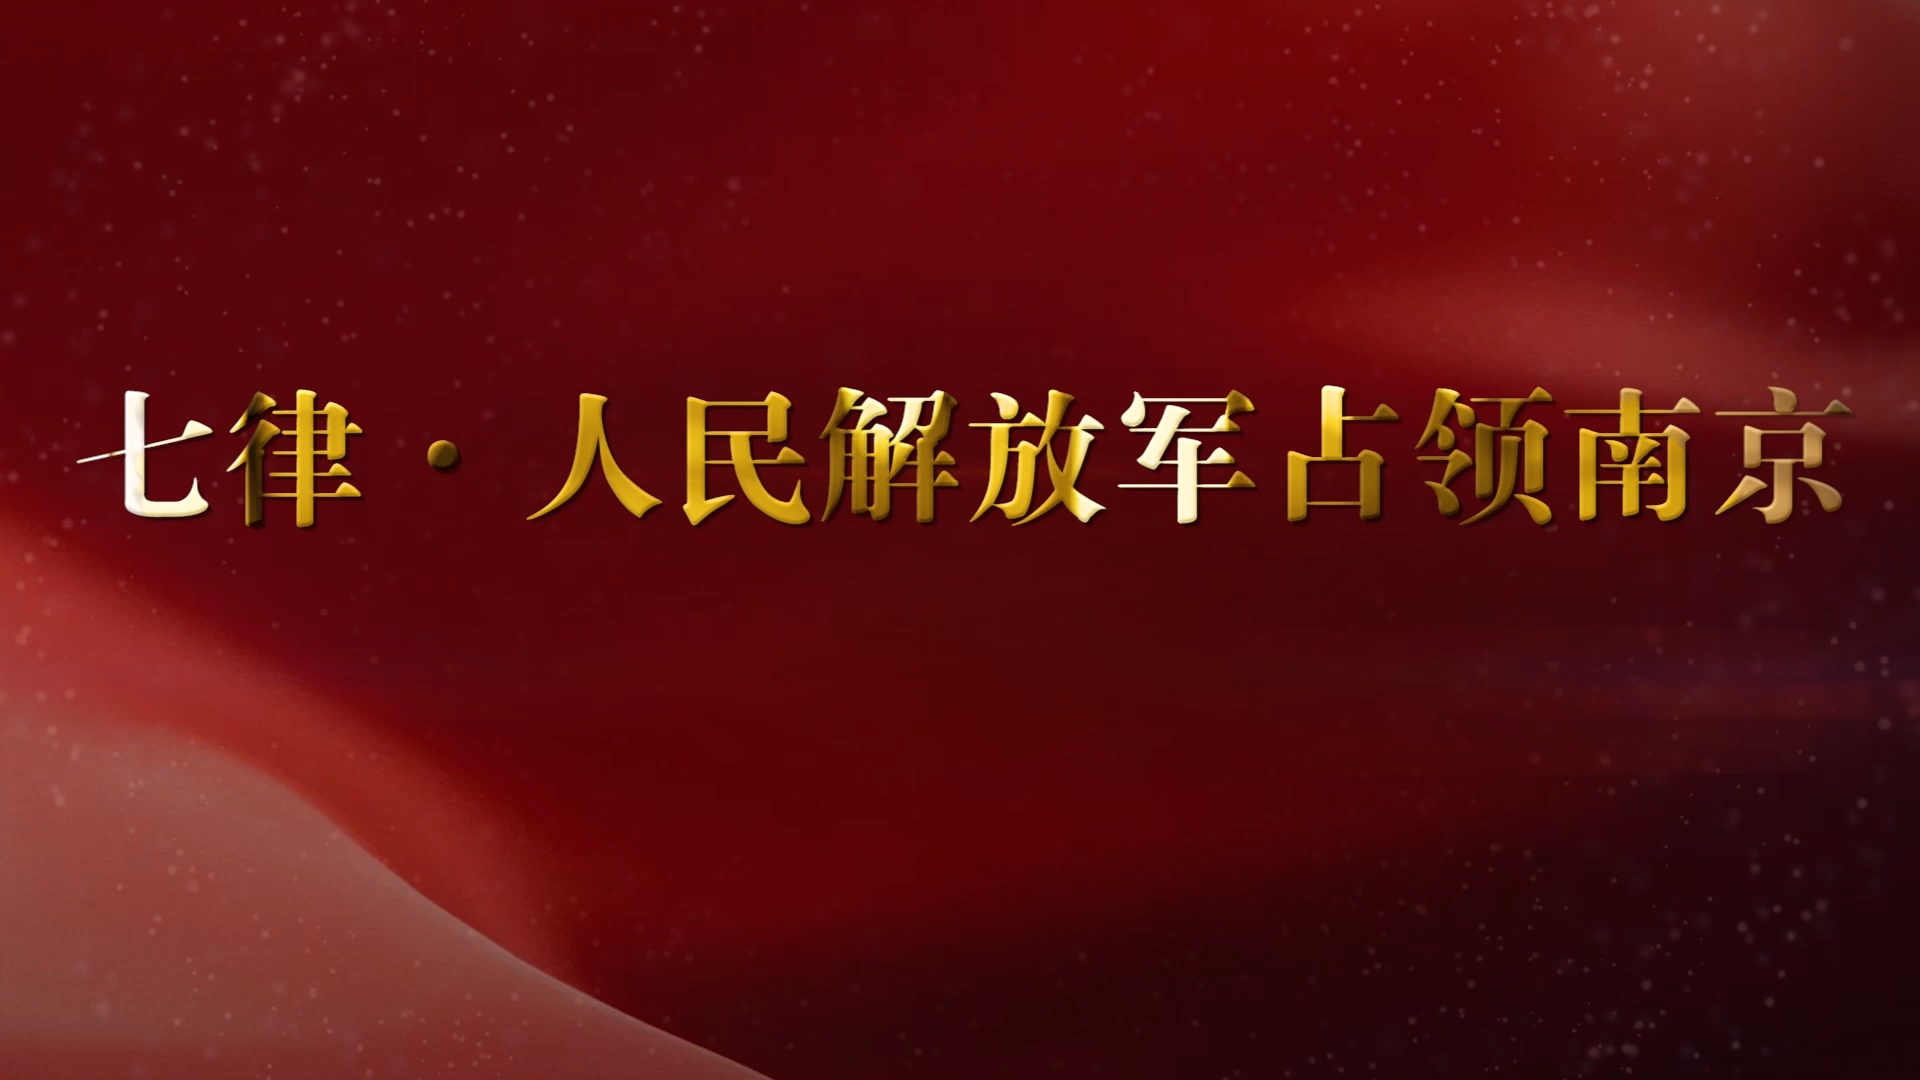 七律·人民解放军占领南京配乐朗诵LED背景视频